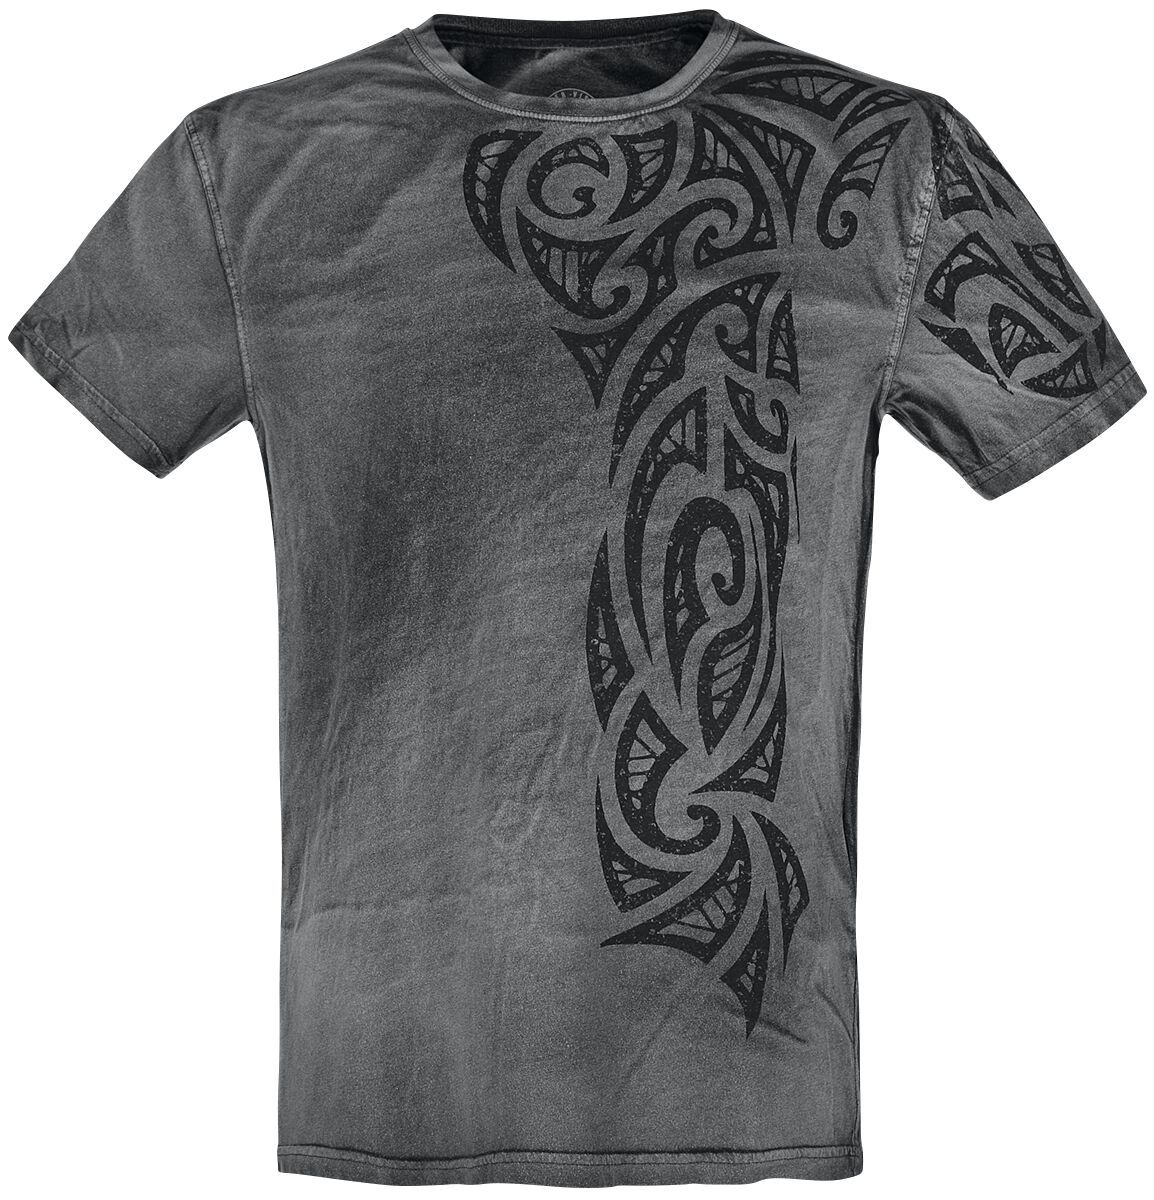 Outer Vision Gothic Tattoo T-Shirt grau in XL